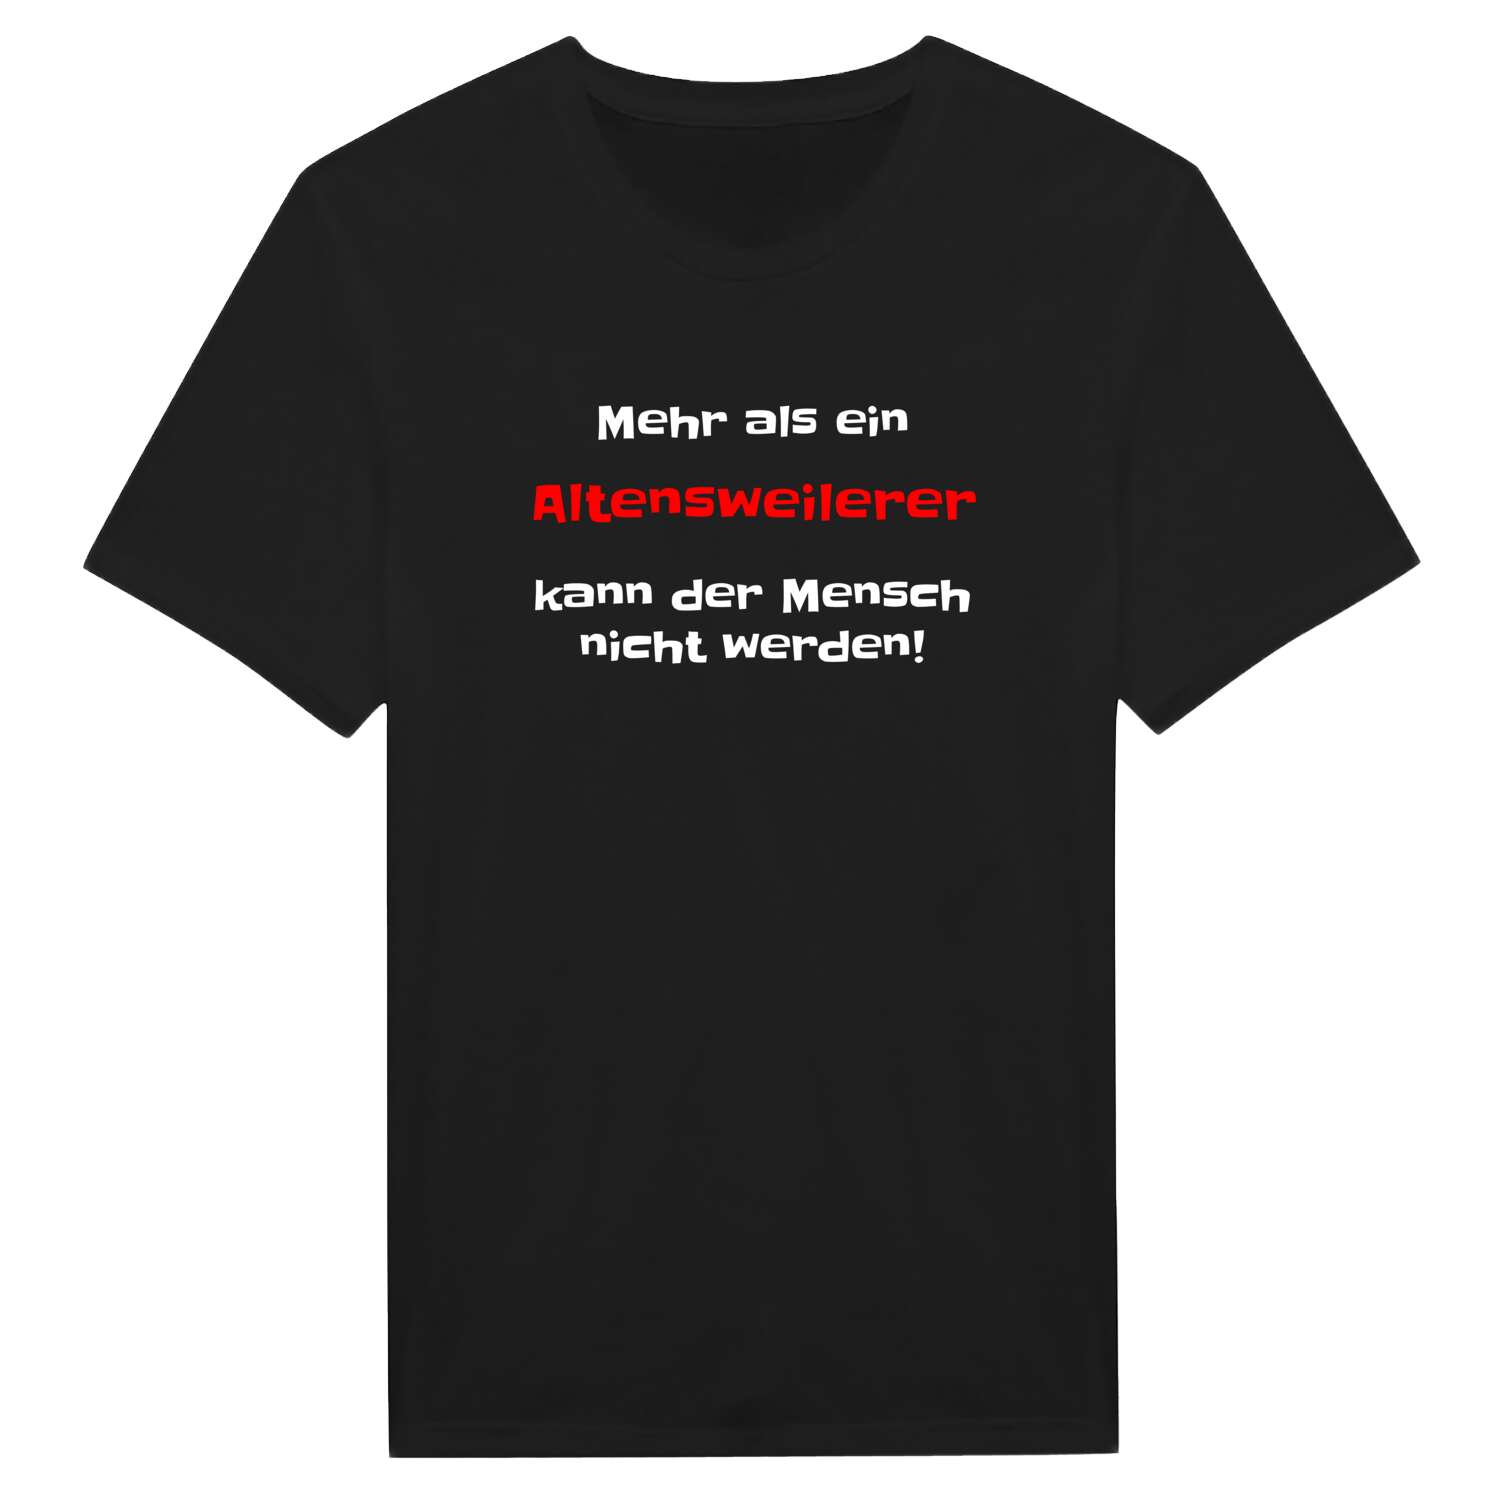 Altensweiler T-Shirt »Mehr als ein«